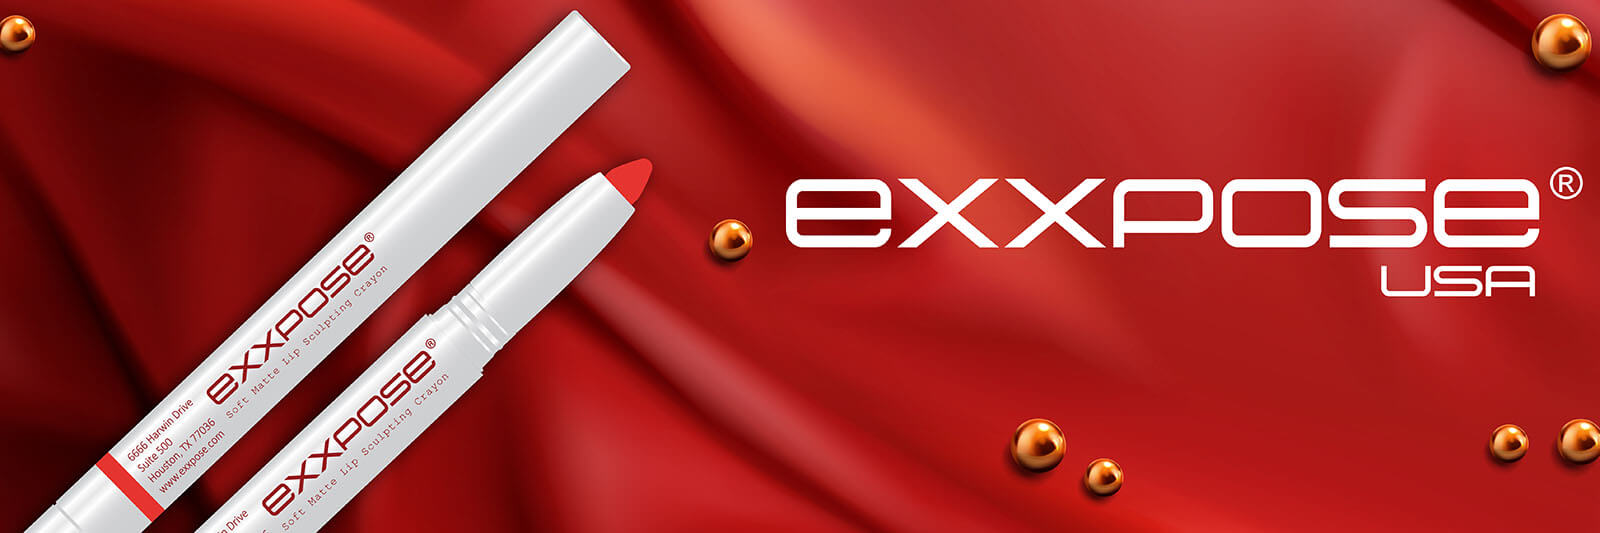 exxpose banner 3 op